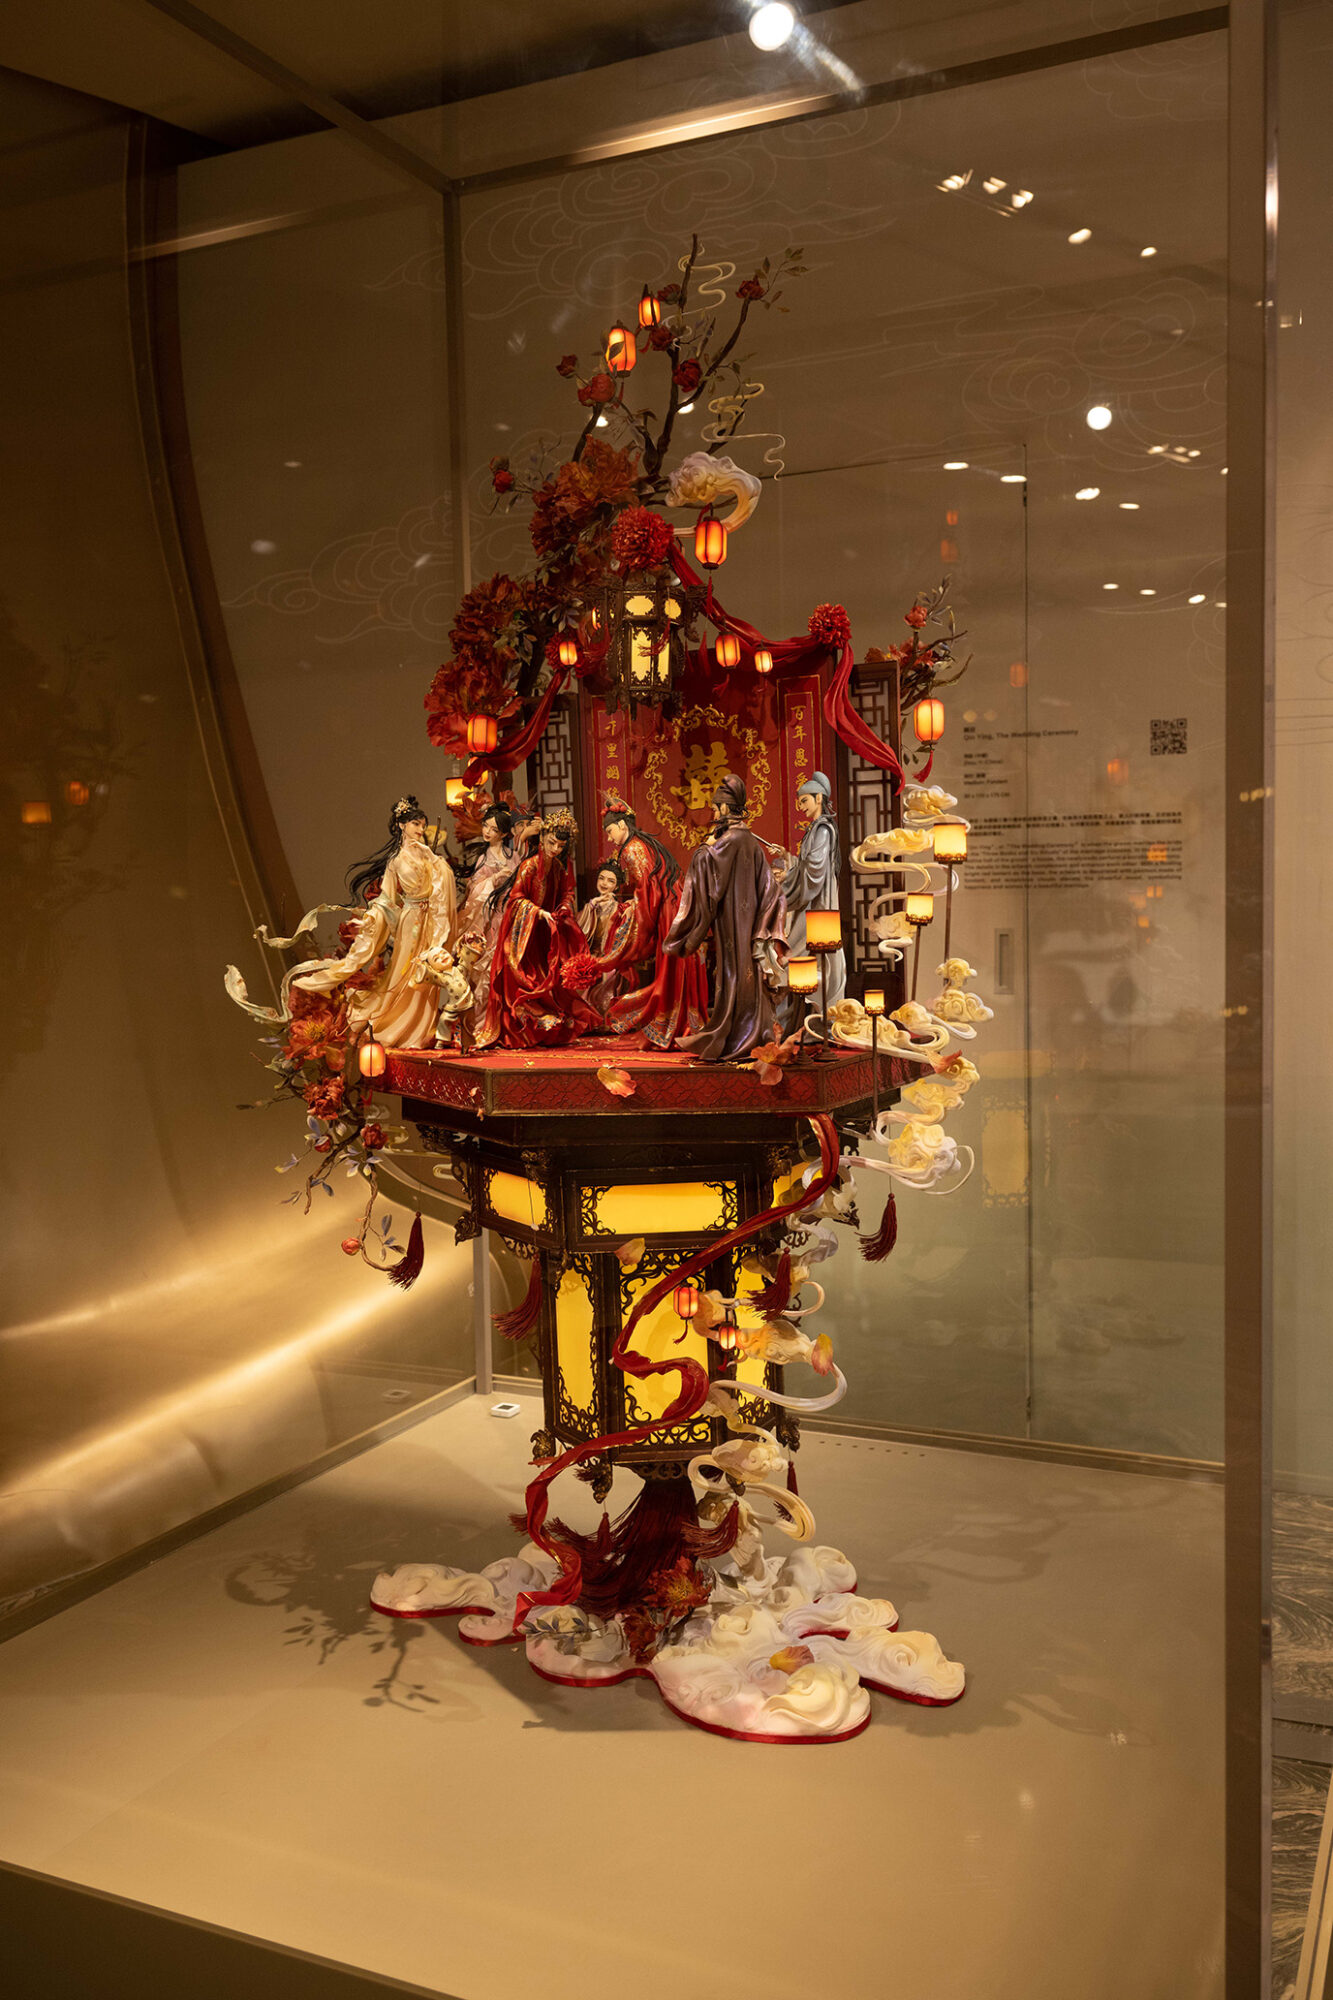 親迎 Qin Ying, The Wedding Ceremony - Fondant Art Exhibition at MGM COTAI